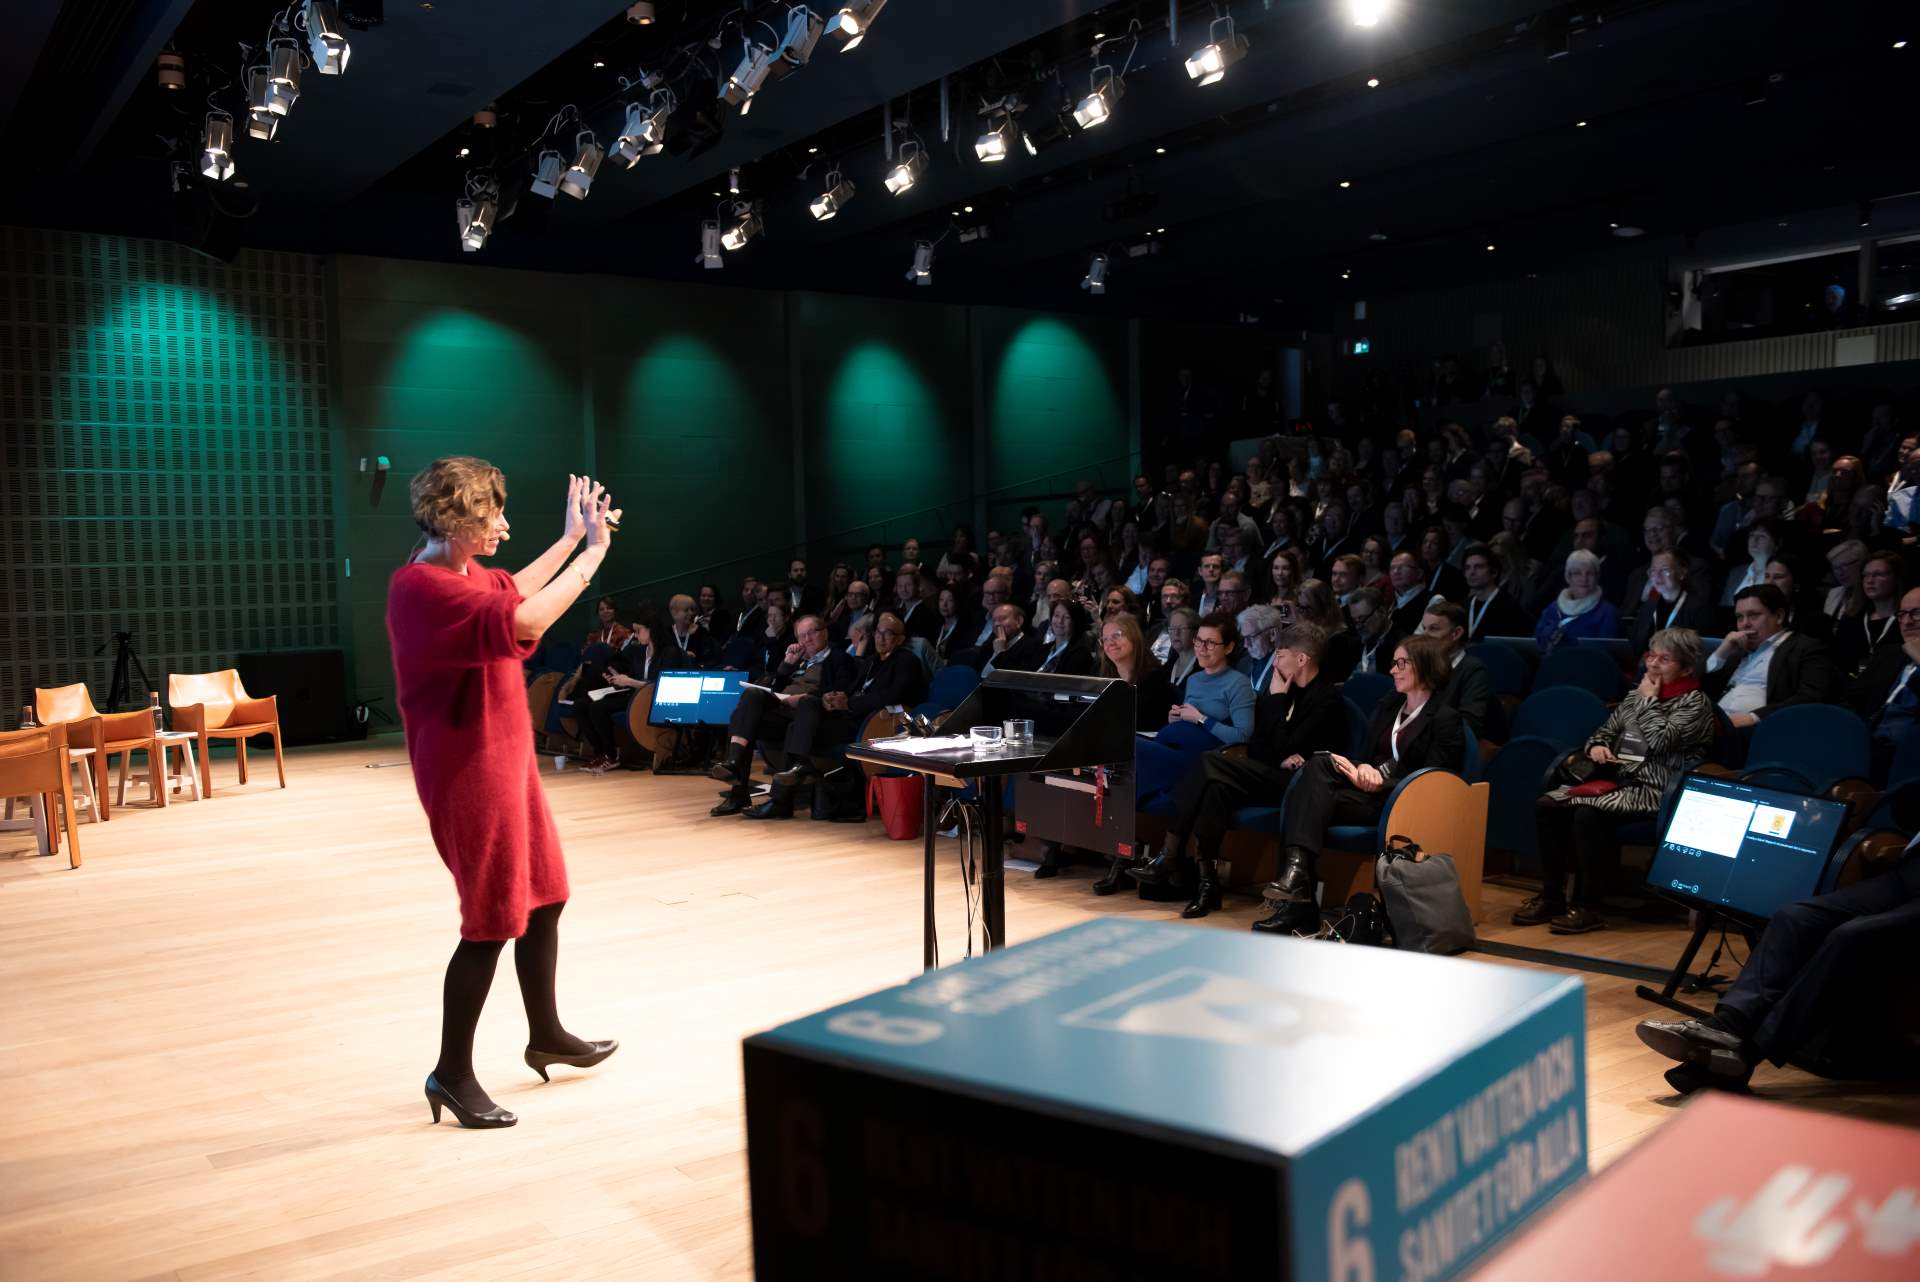 Mariana Mazzucato talar inför fullsatt auditorium